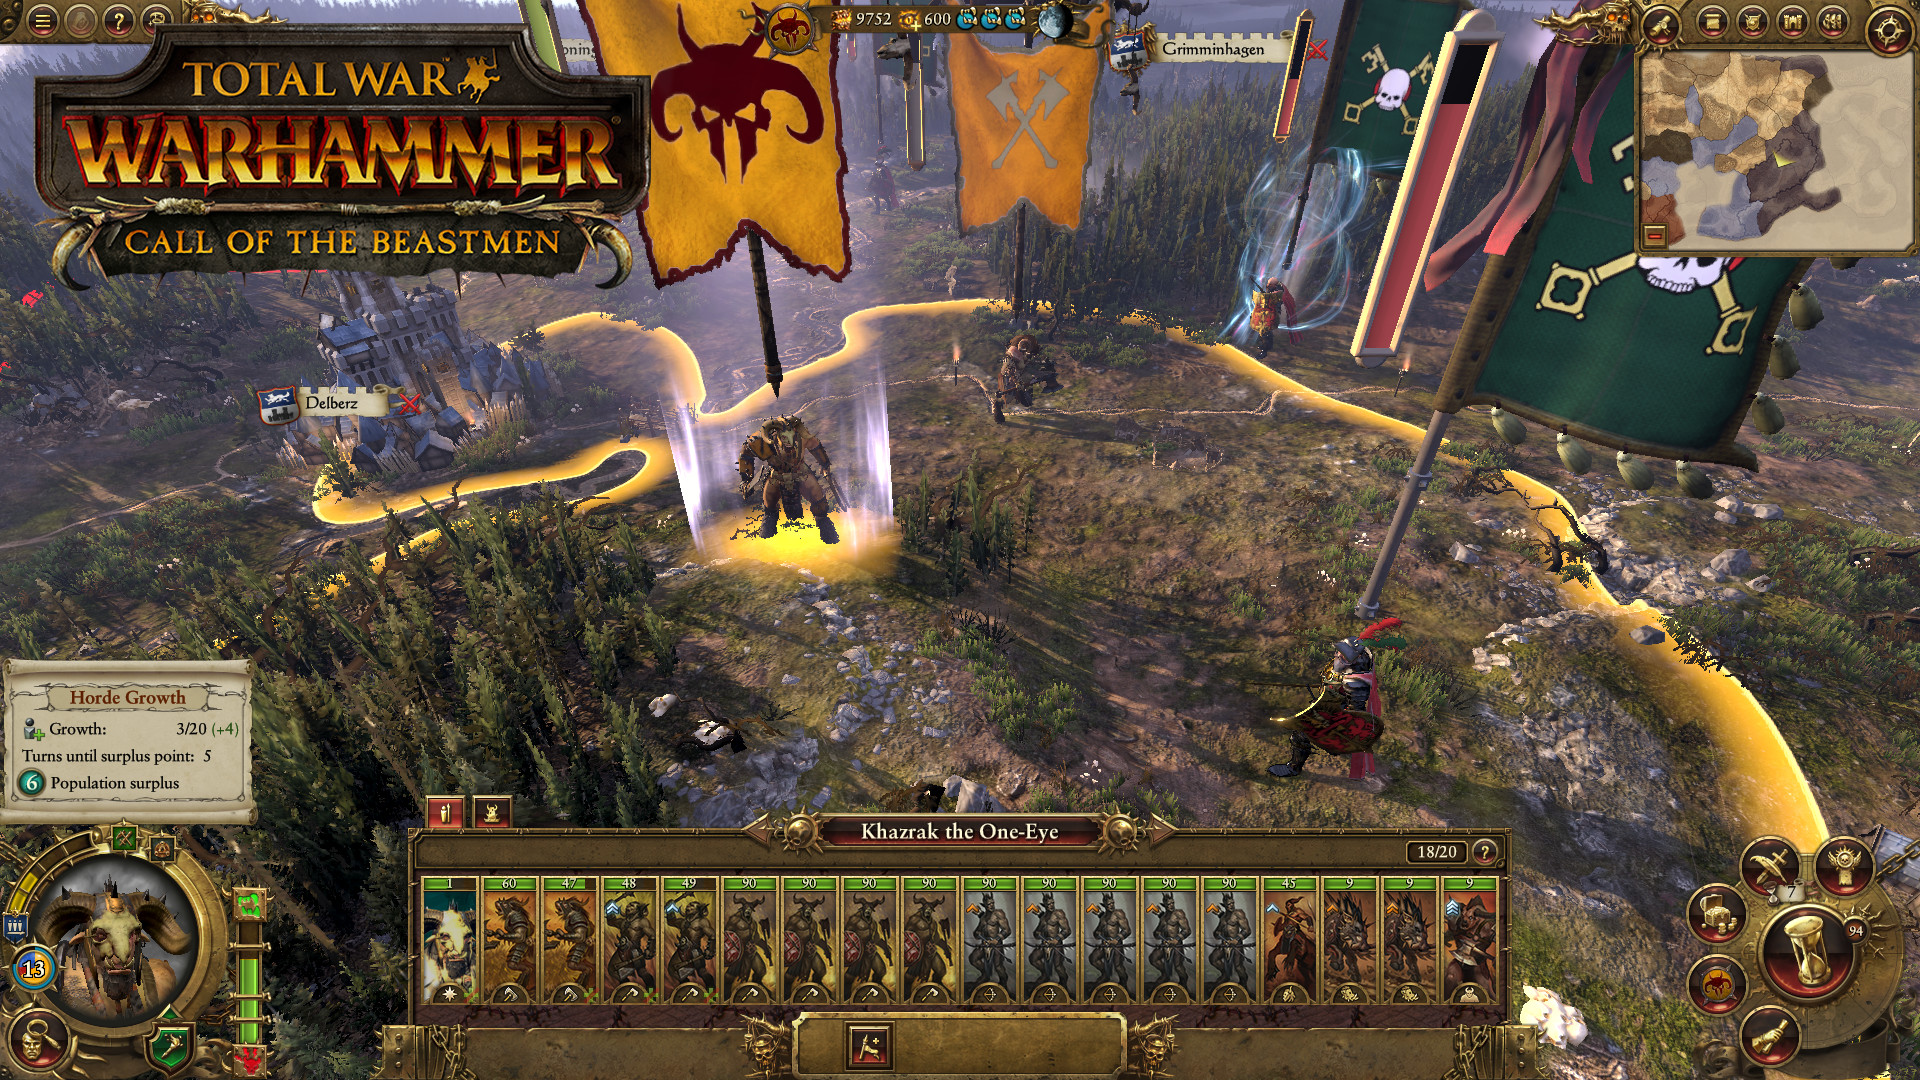 Total War: WARHAMMER - Call of the Beastmen screenshot